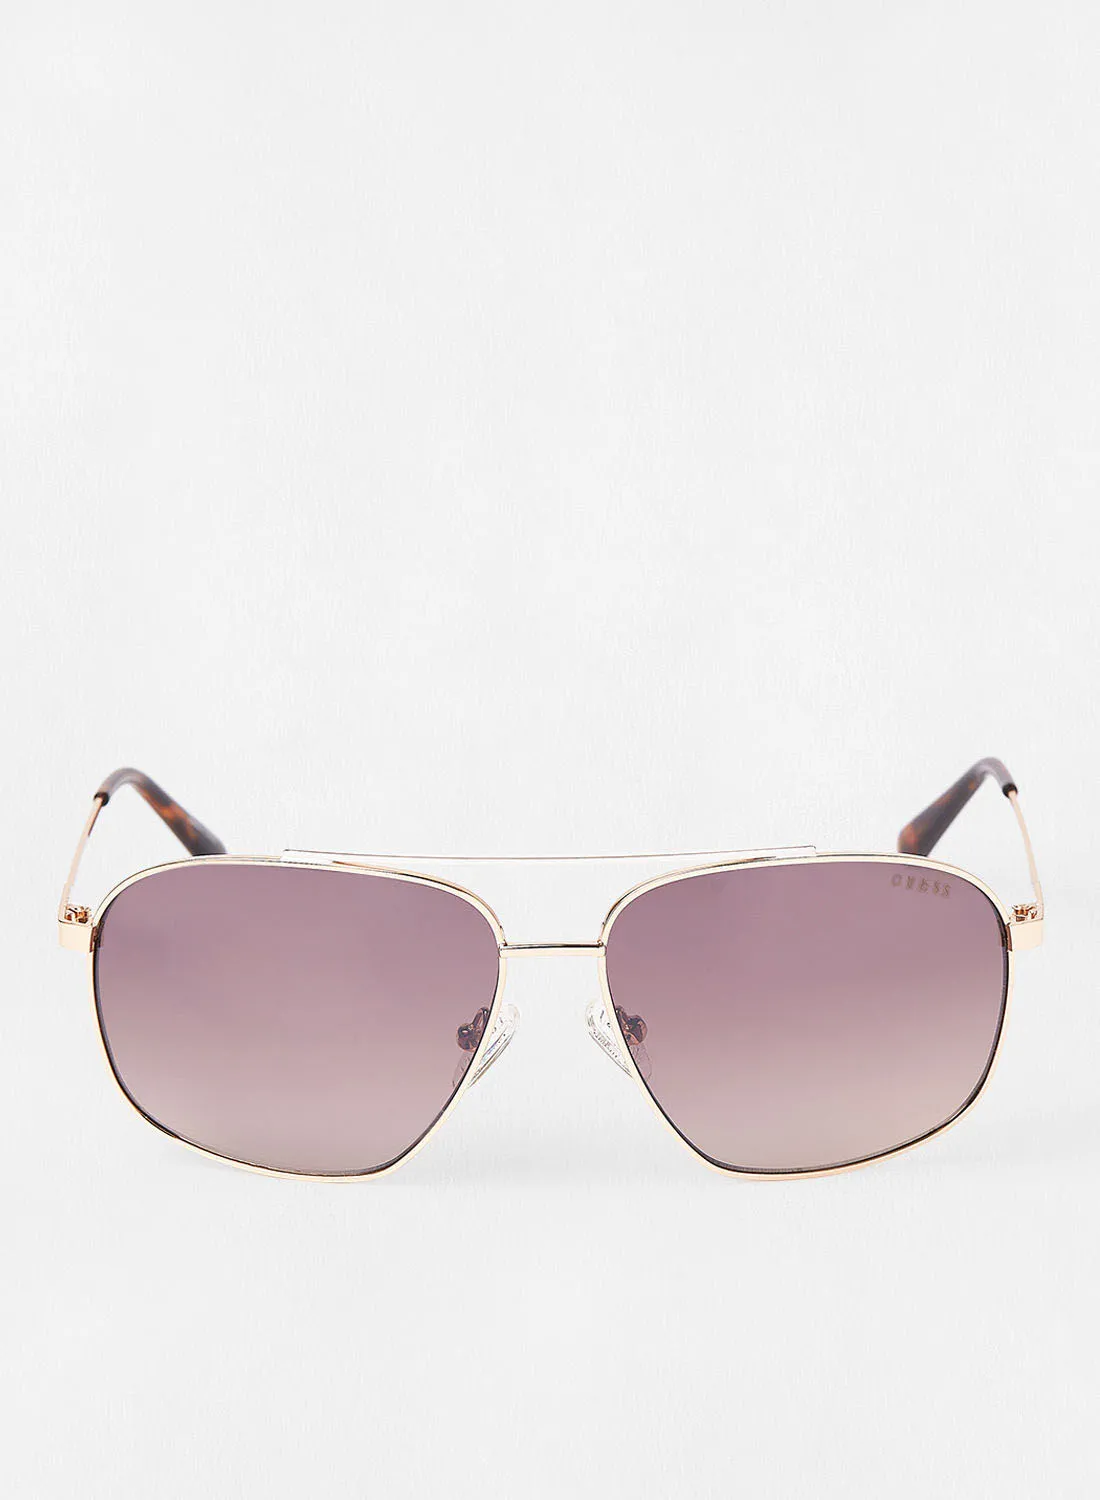 GUESS Men's Square Sunglasses - Lens Size: 61 mm